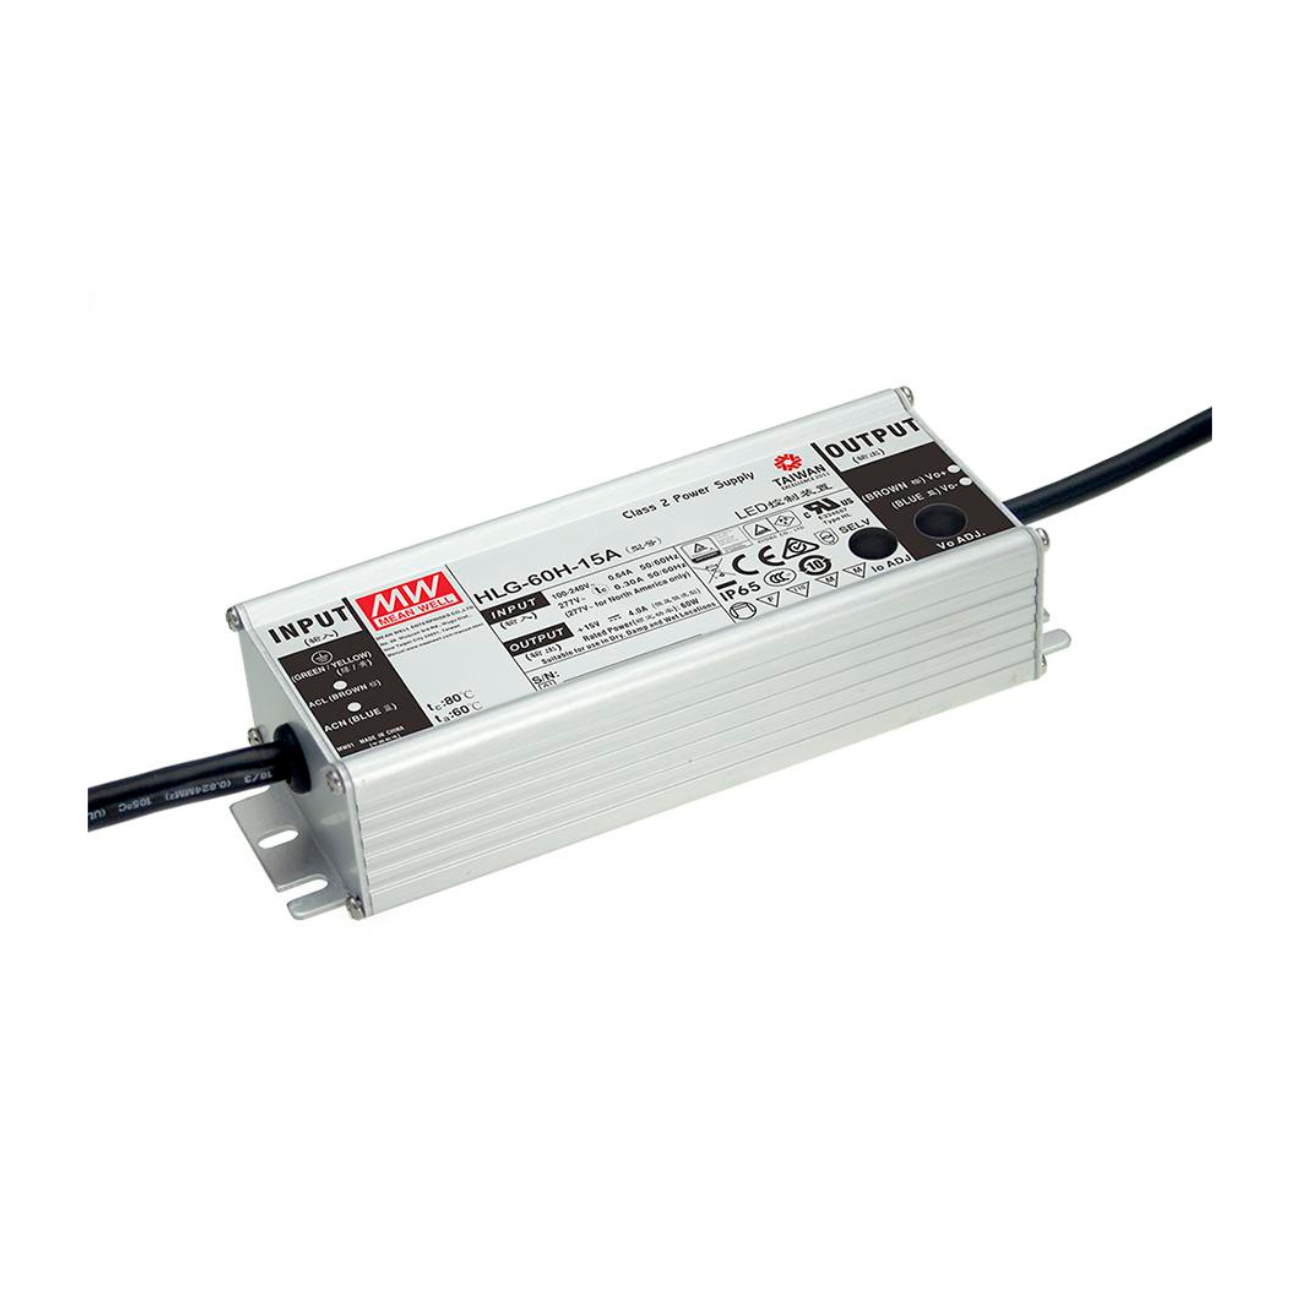 MeanWell HLG-60H-20 (60W/20V) LED-Netzteil